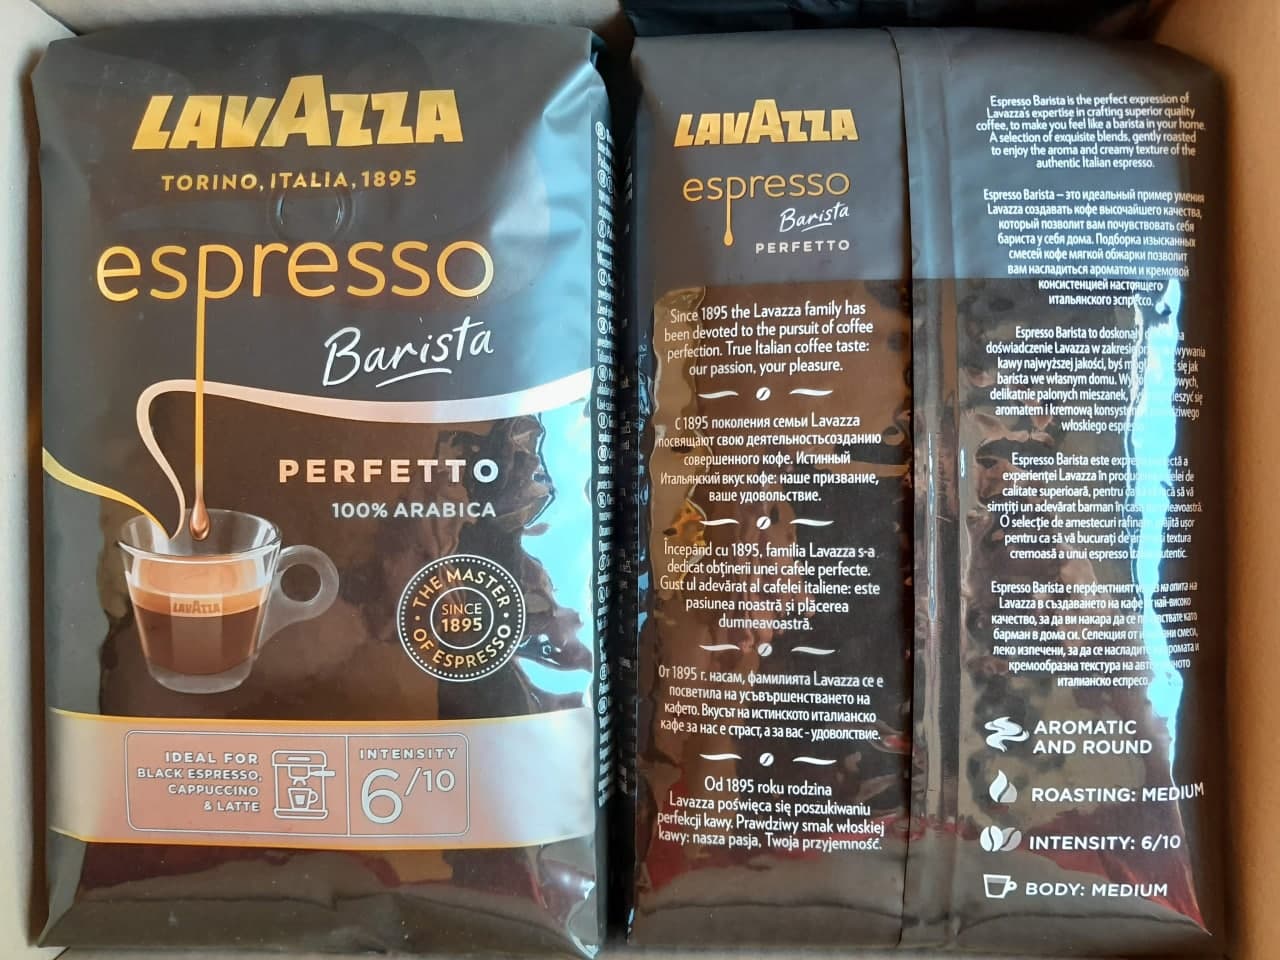 Kohvioad "LAVAZZA" Espresso Barista Perfetto